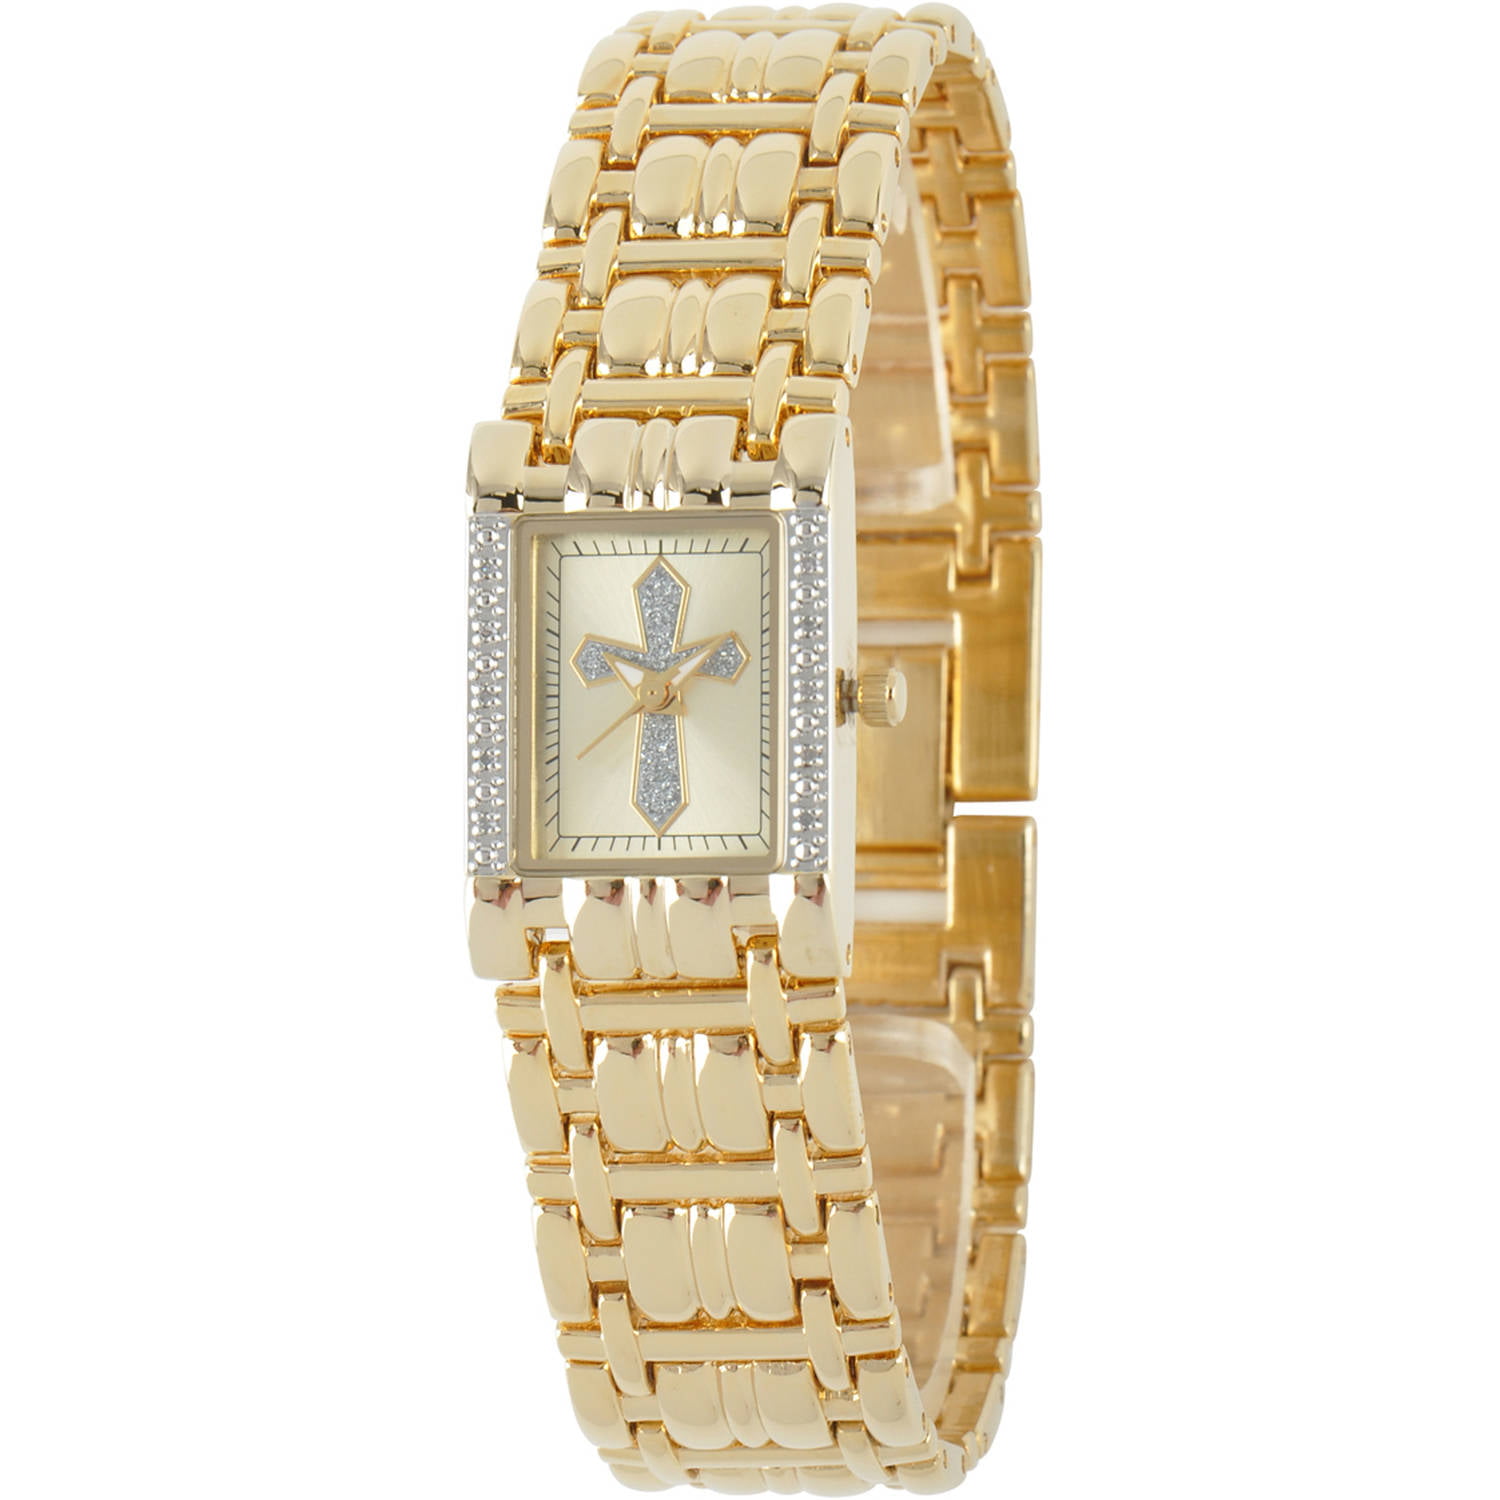 Women's Cross Rectangular Bracelet Watch, Gold - Walmart.com